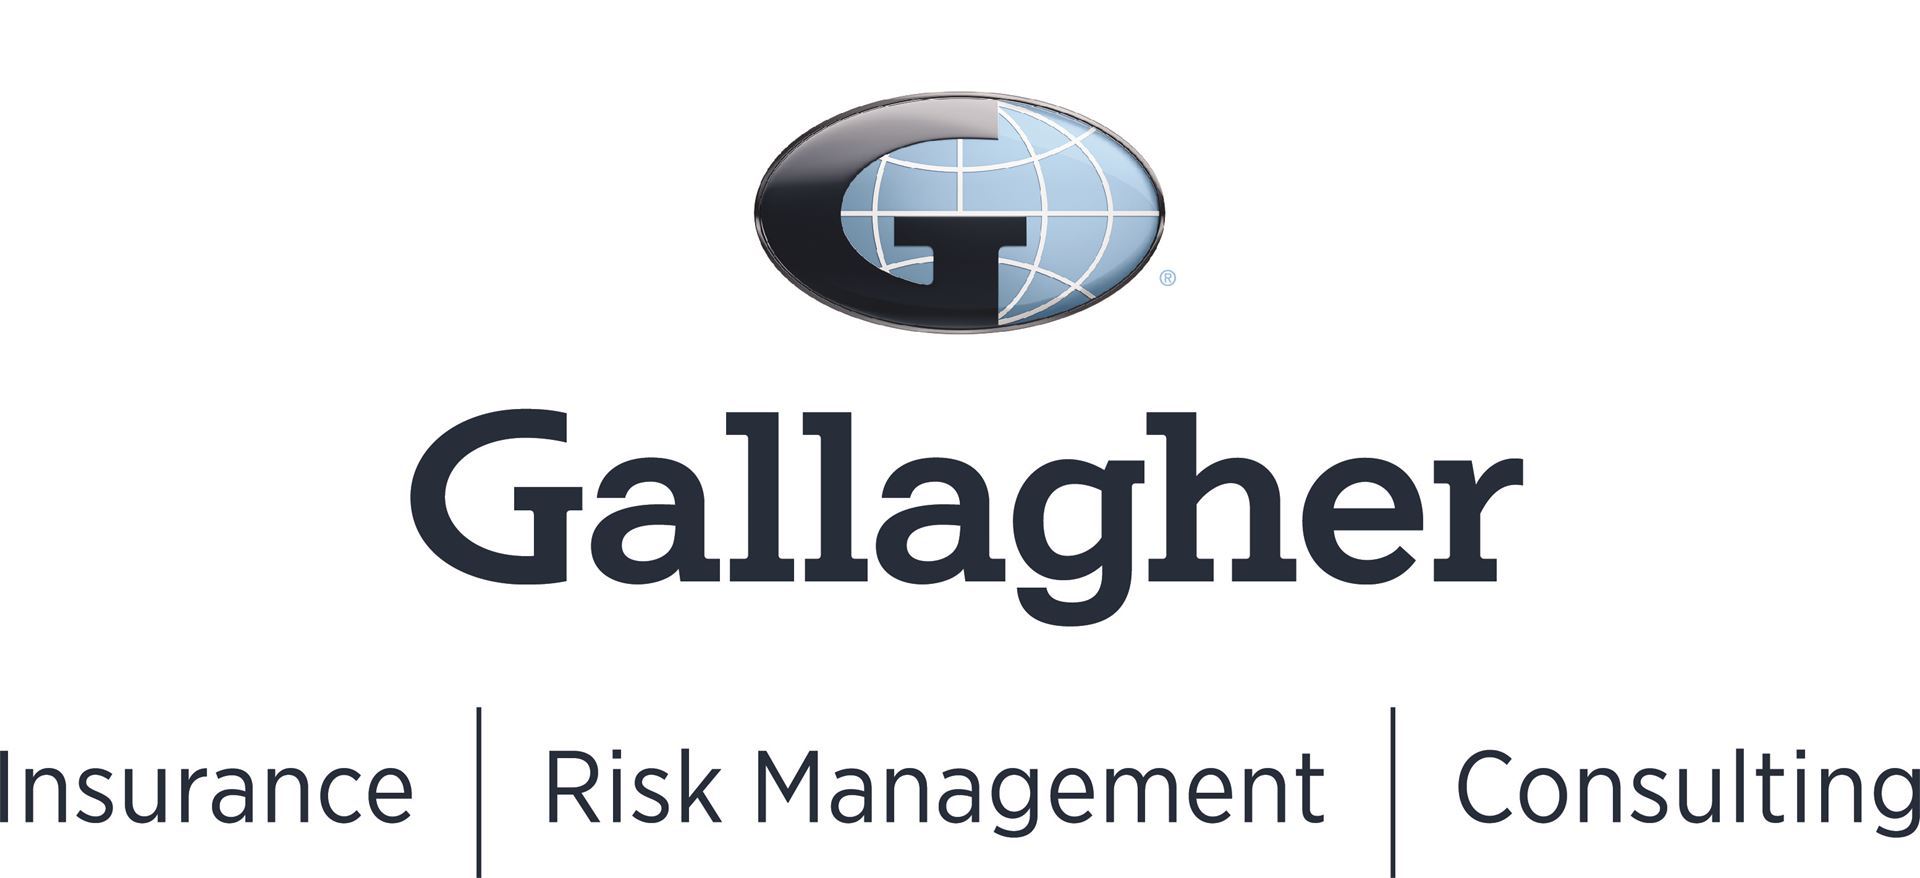 Gallagher-logo